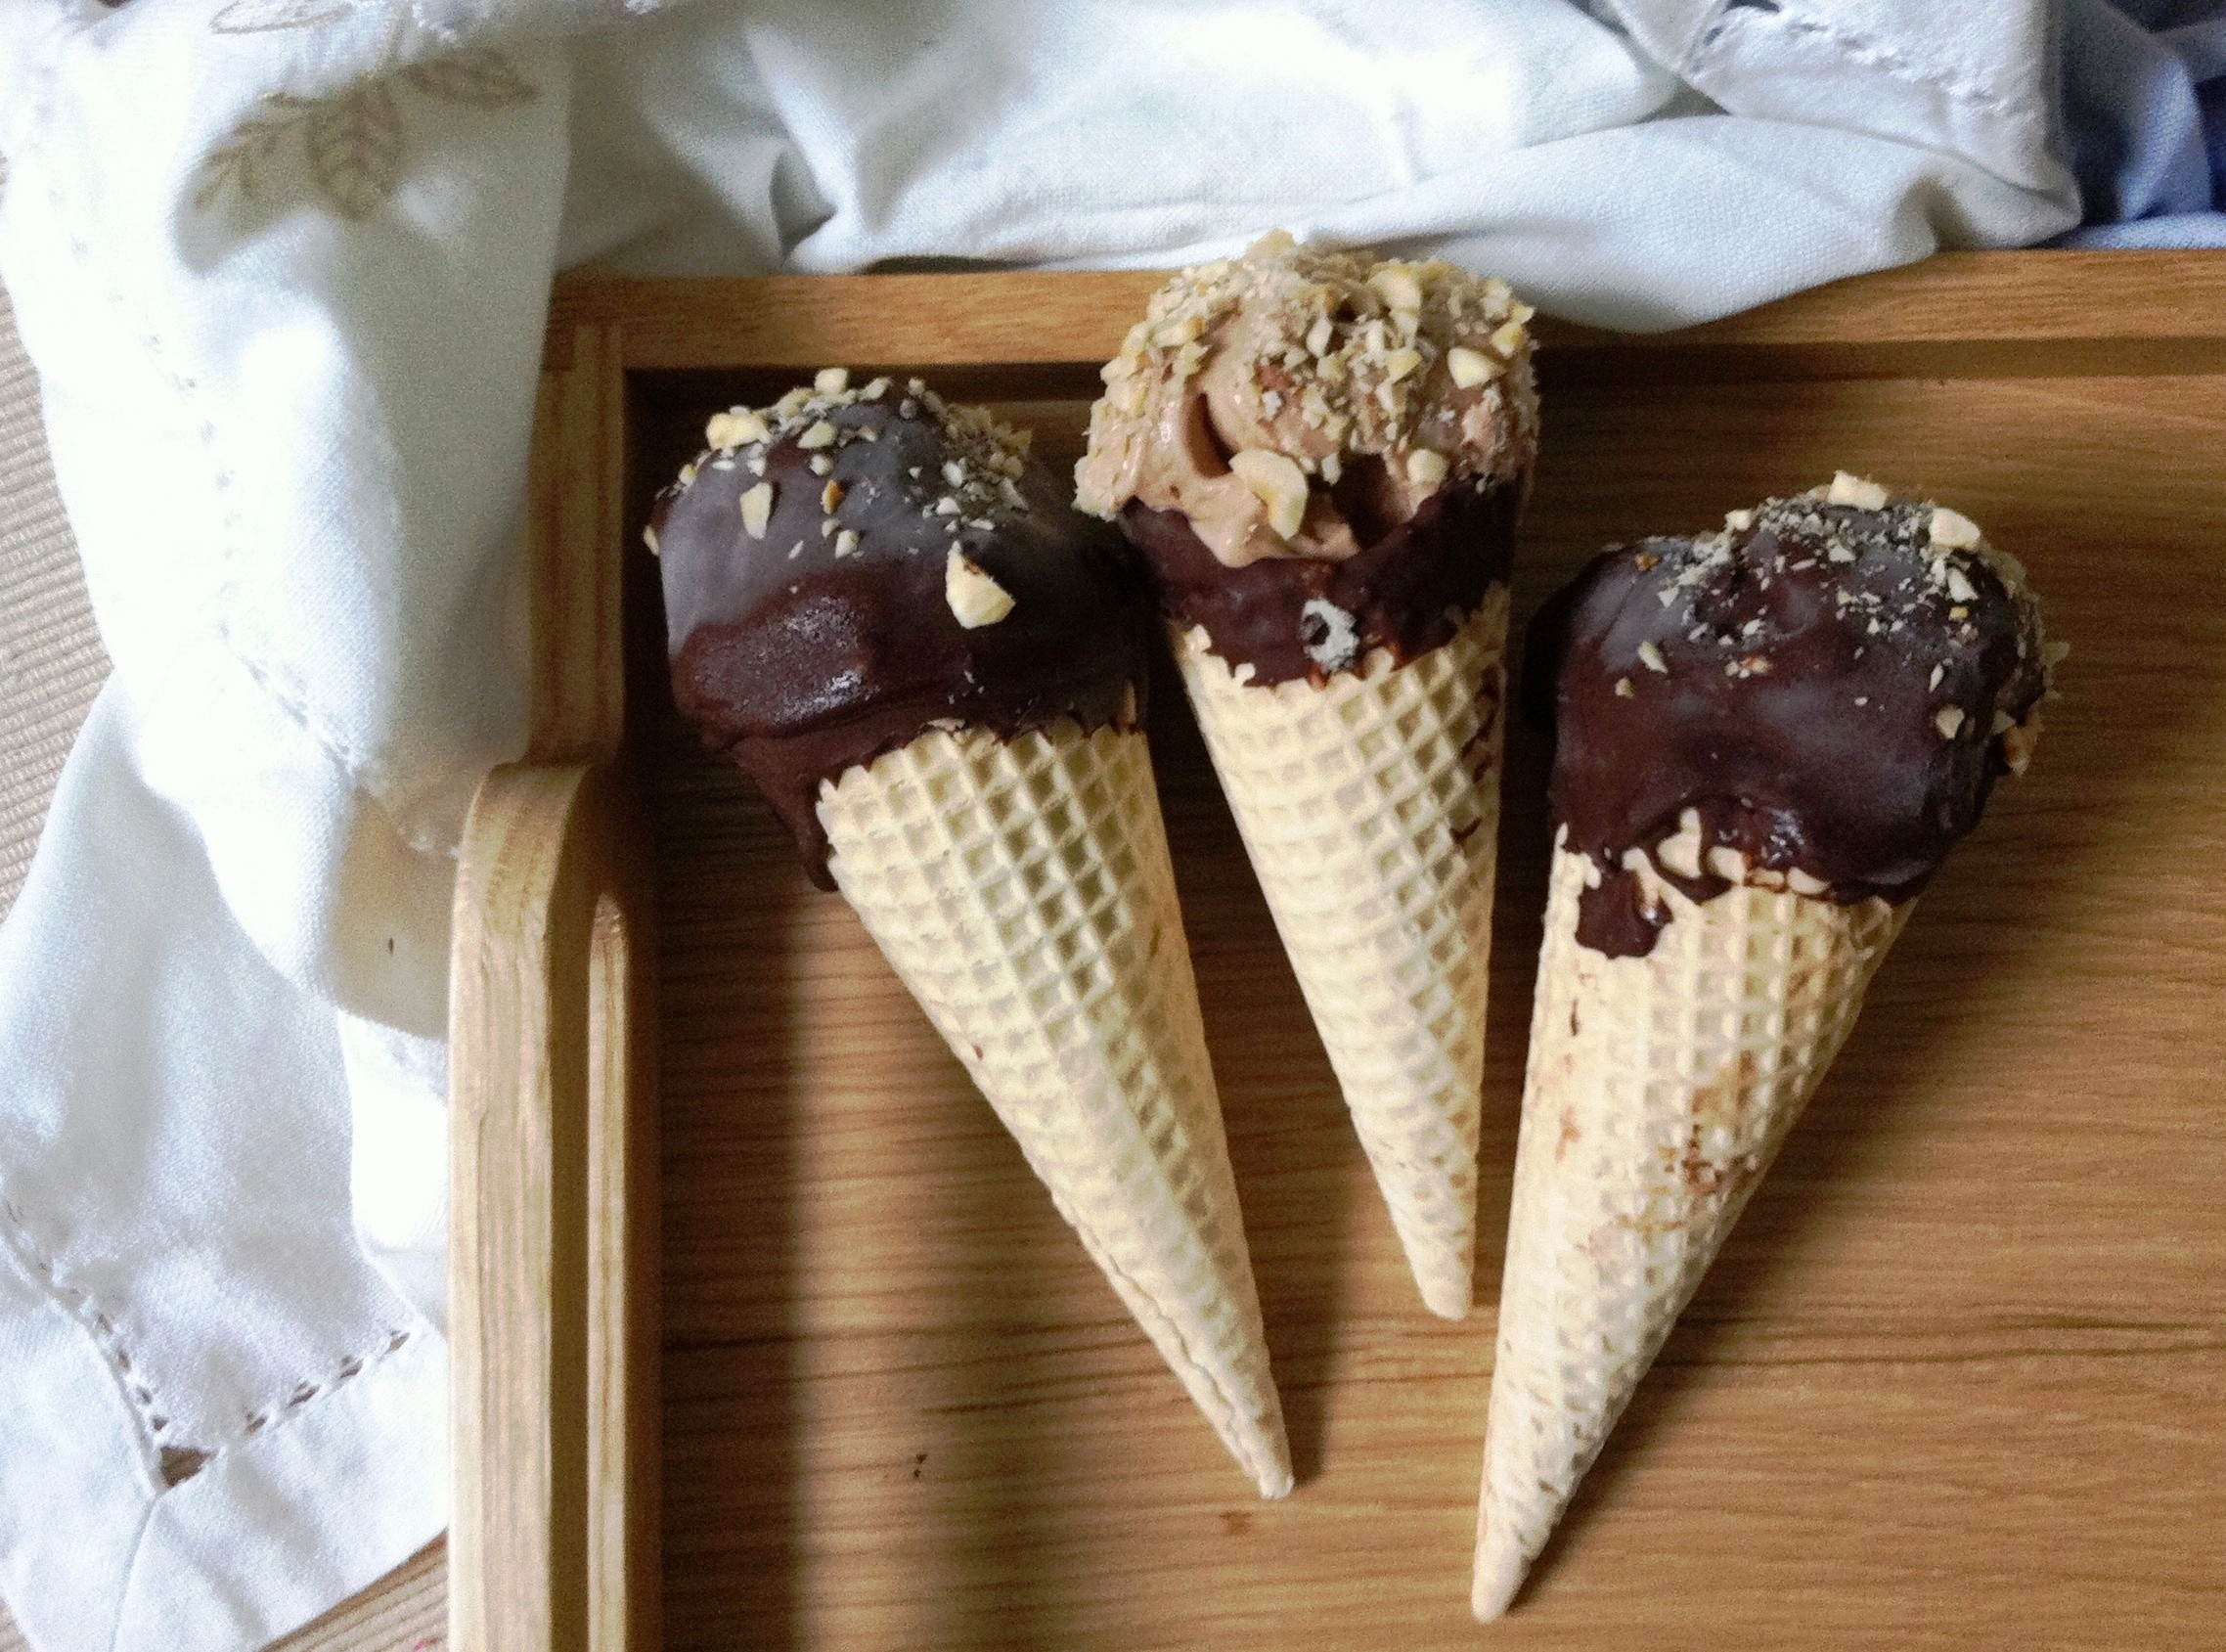 Ferrero Rocher in ice cream form